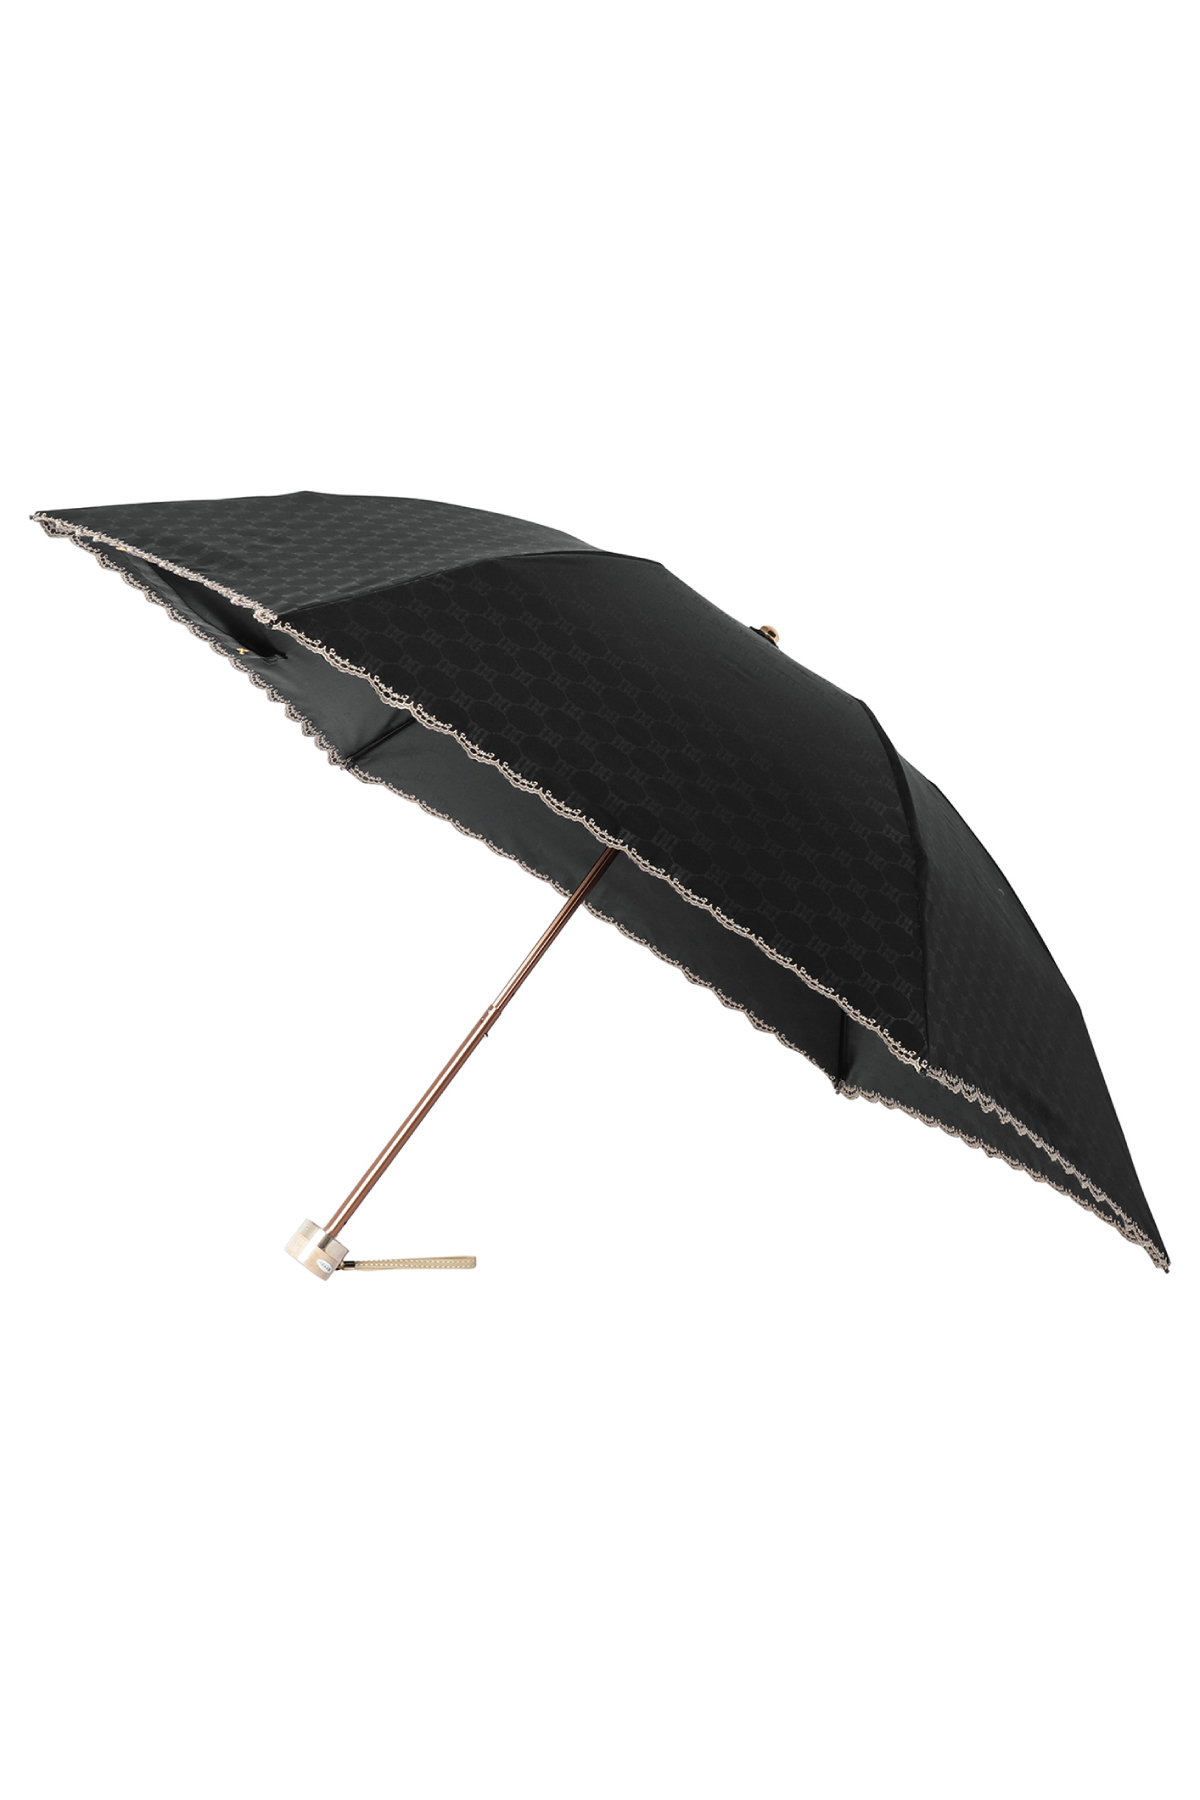 【日傘】ミニ折りたたみ傘ロゴジャカード刺繍 詳細画像 15/ブラック